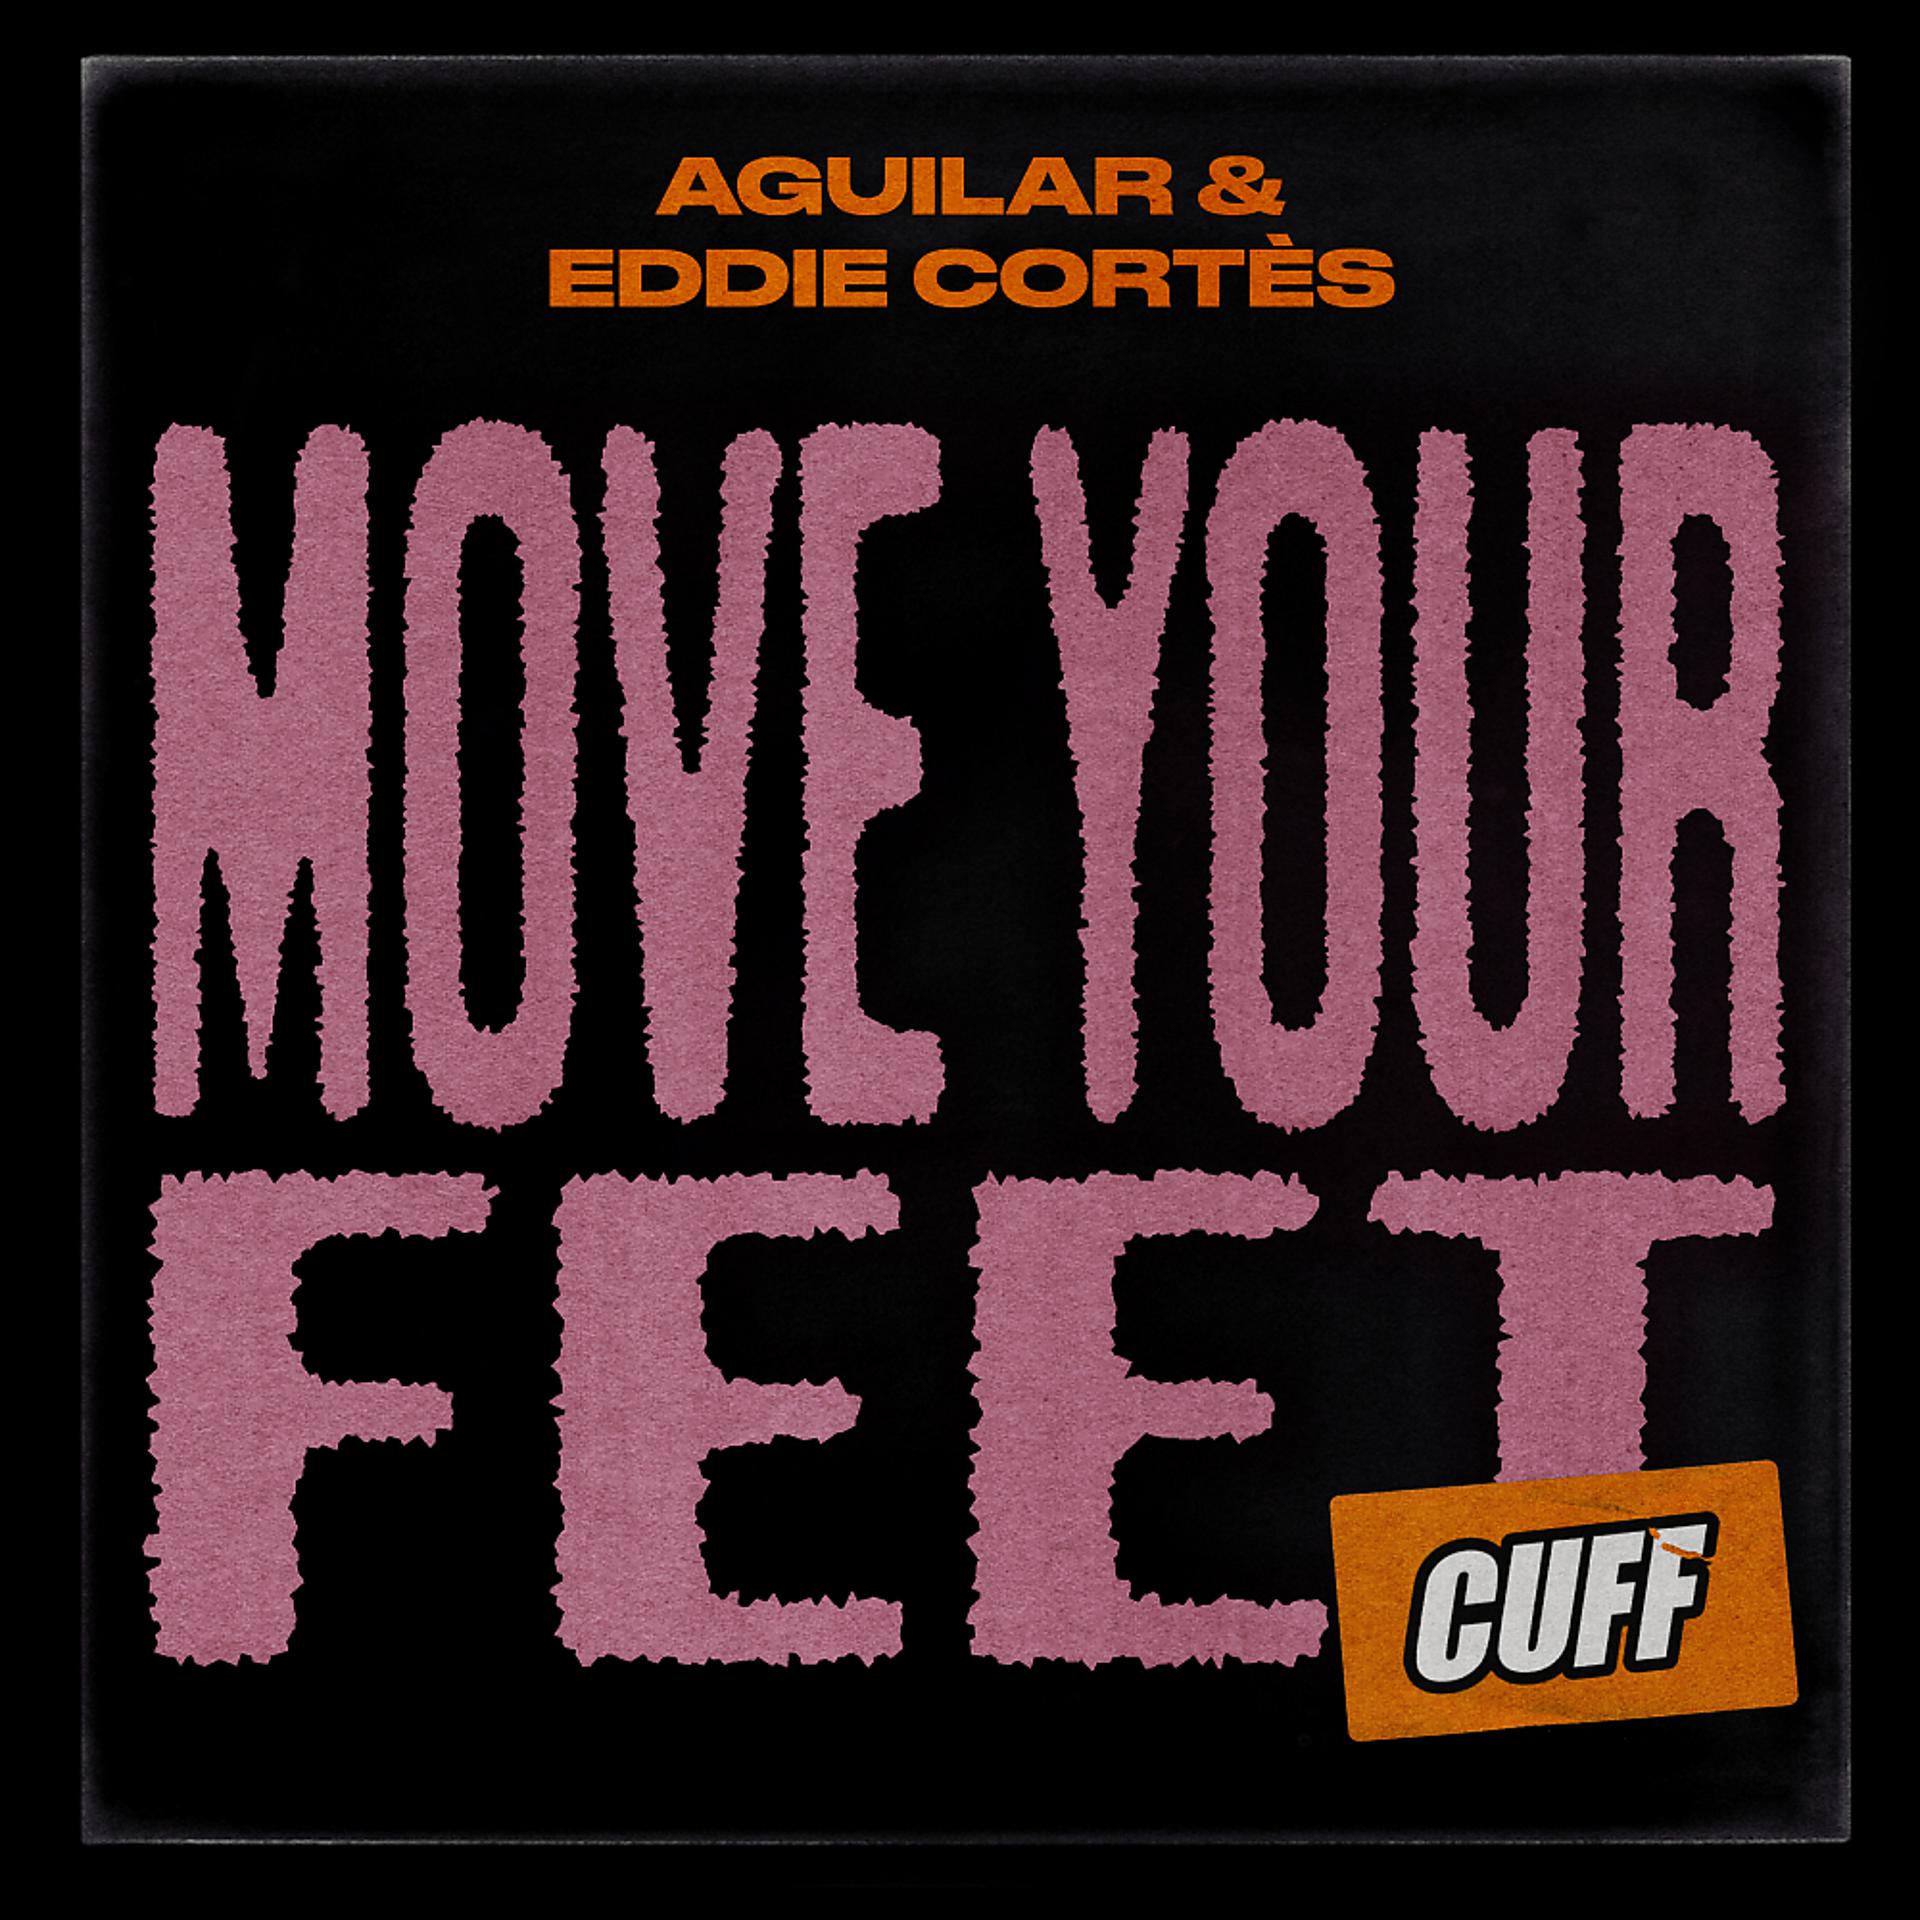 Постер альбома Move Your Feet